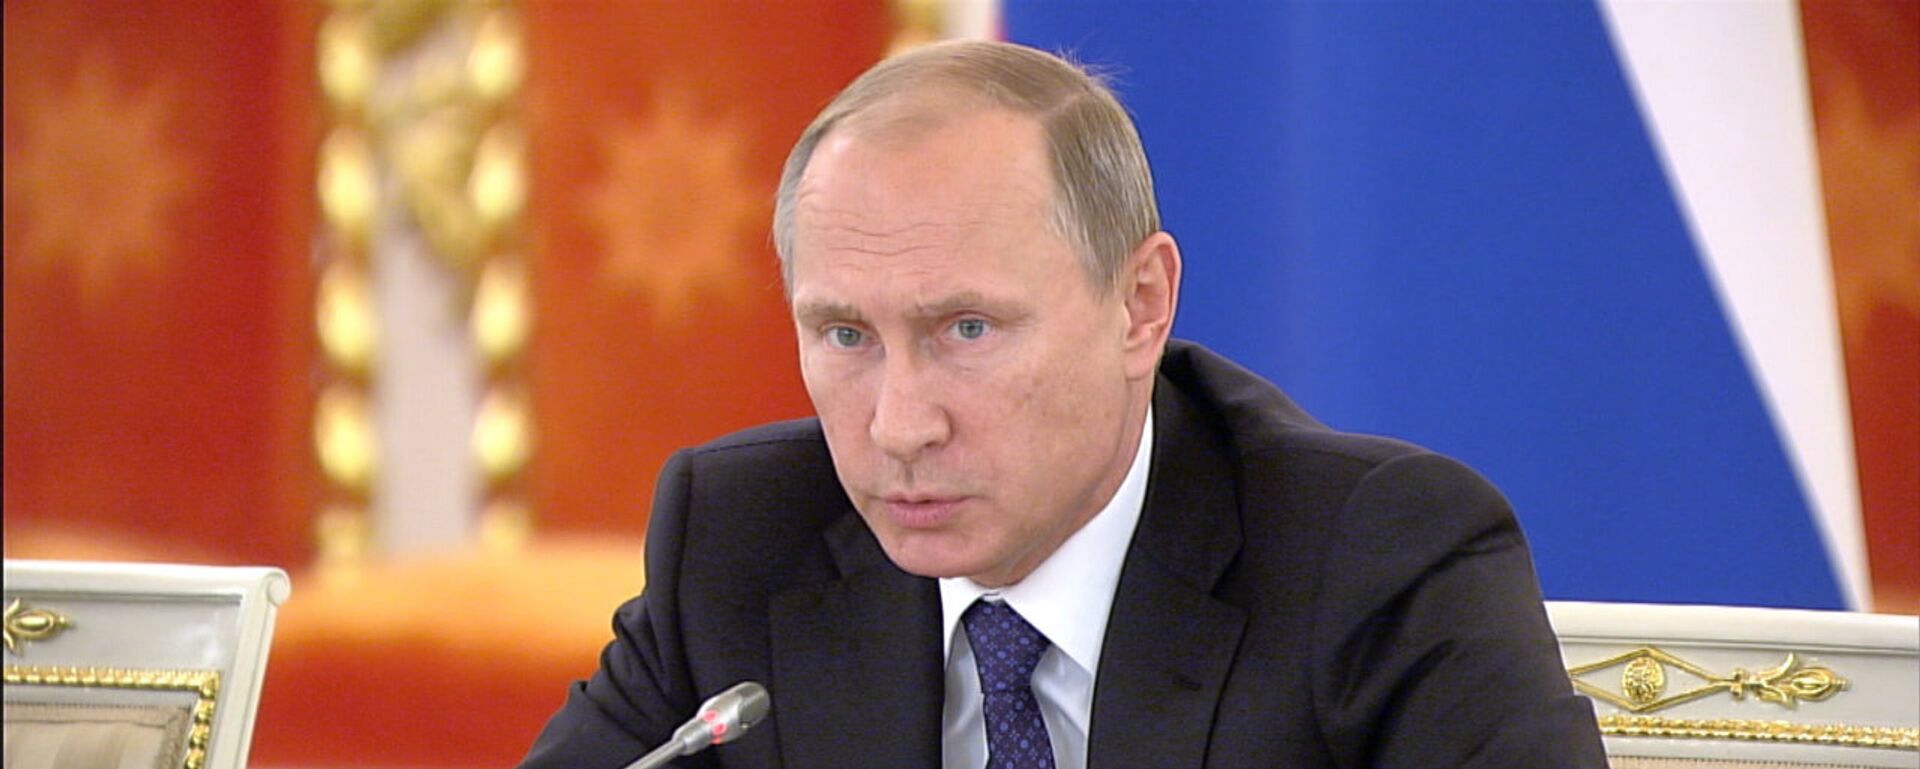 Rossiya prezidenti Vladimir Putin - Sputnik O‘zbekiston, 1920, 07.10.2016